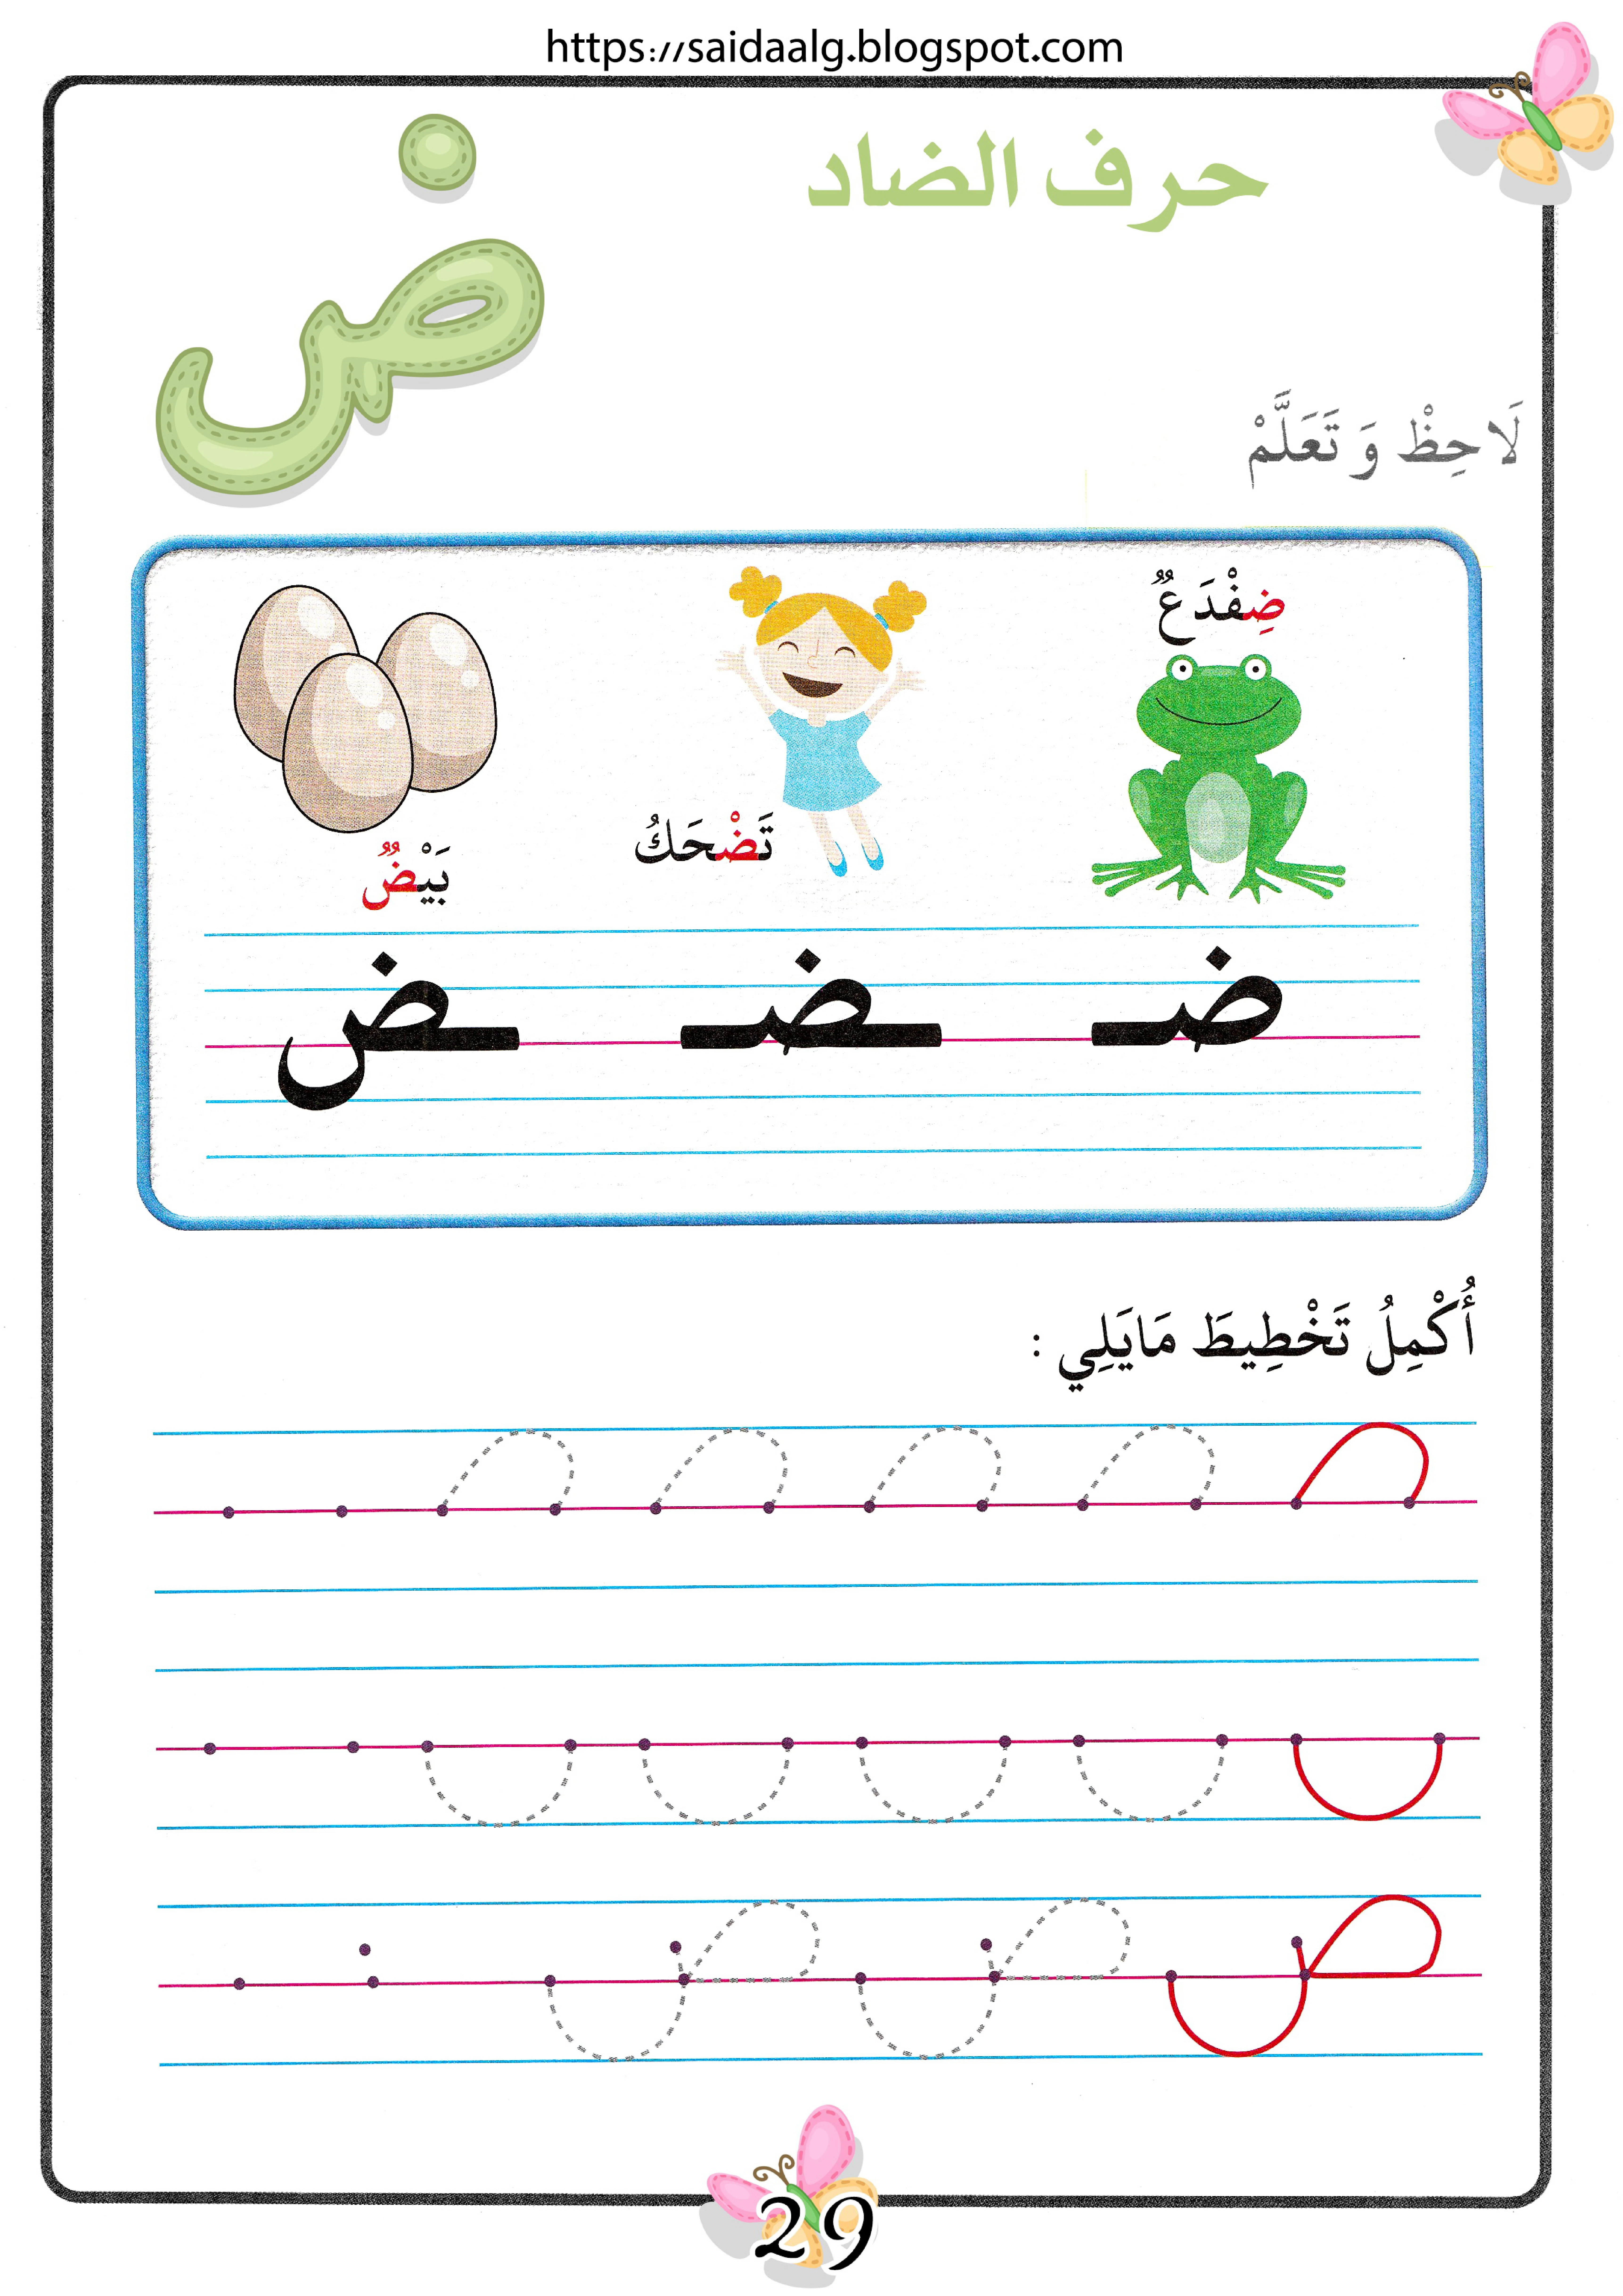 مذكرة تعلم الحروف الهجائية بطريقة مميزة الجزء الأول pdf تحميل مباشر مجاني